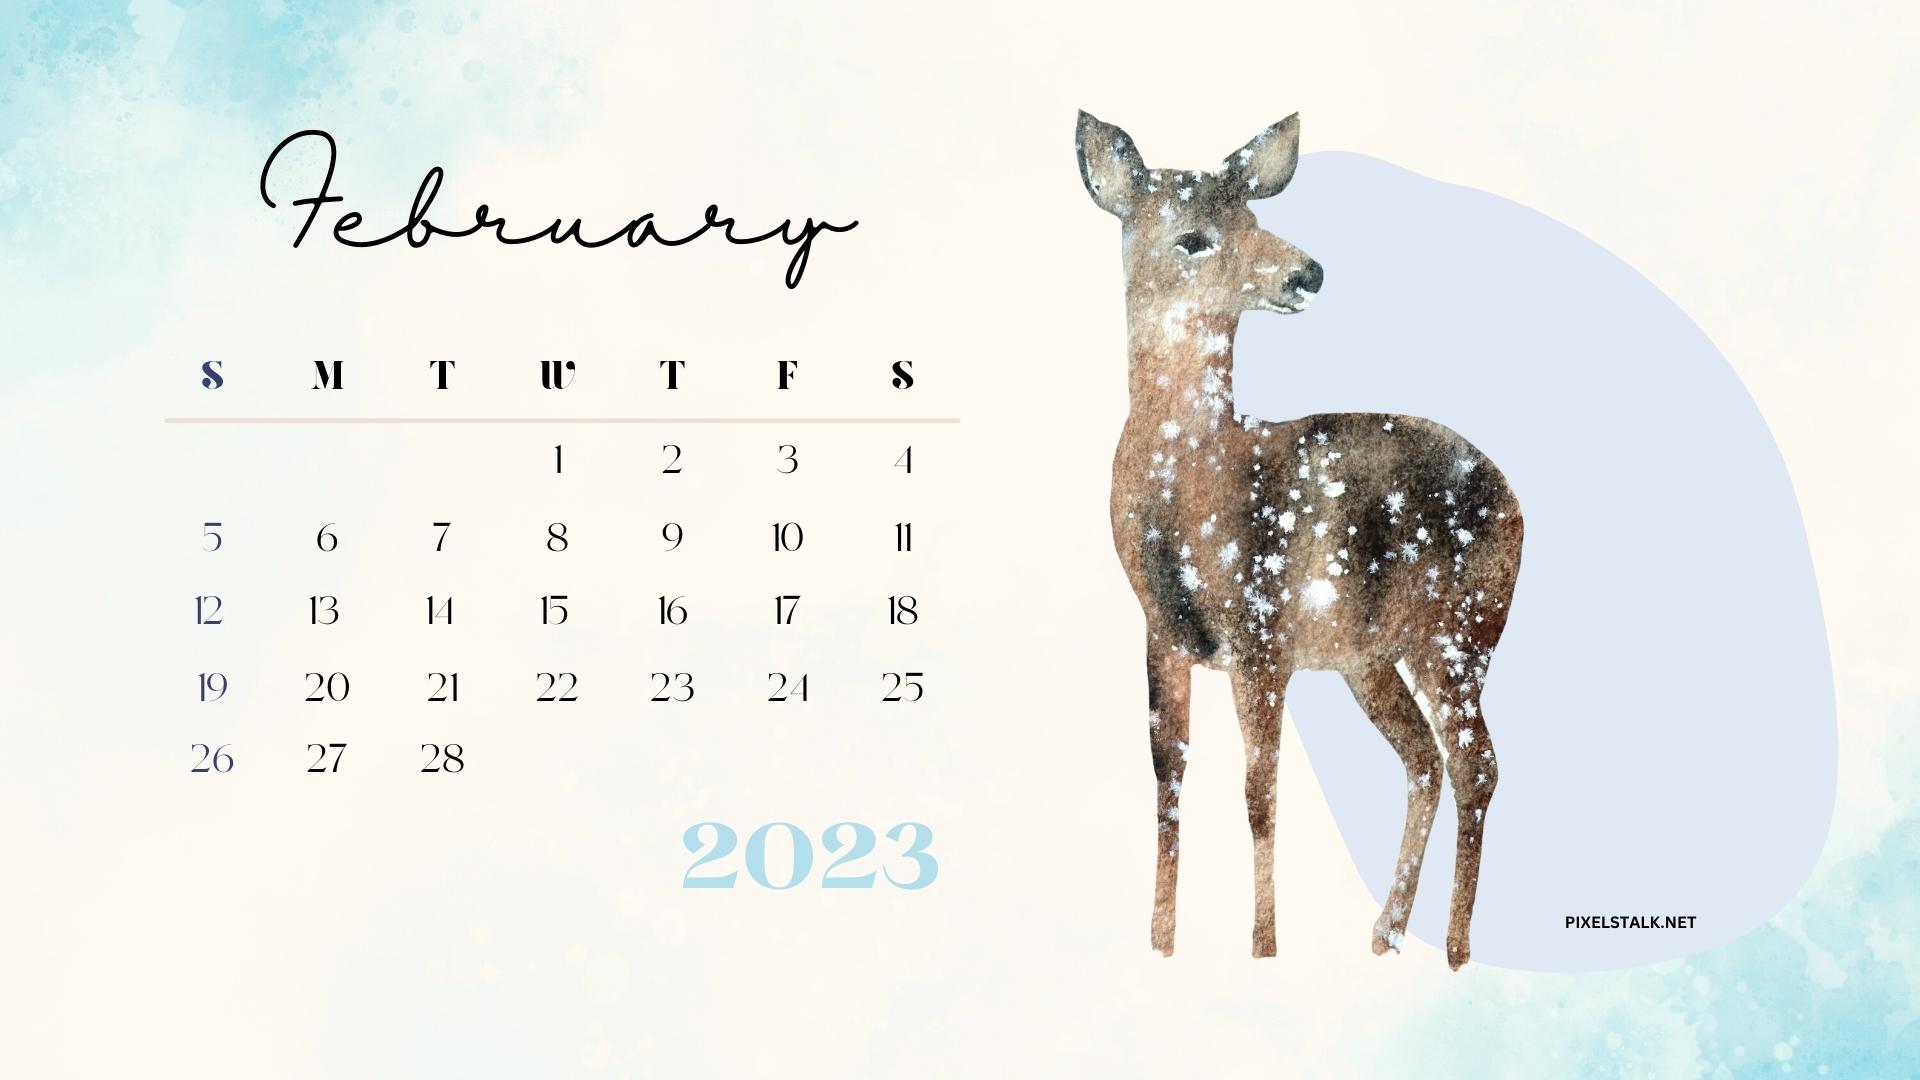 February 2023 Desktop Wallpaper Calendar  CalendarLabs